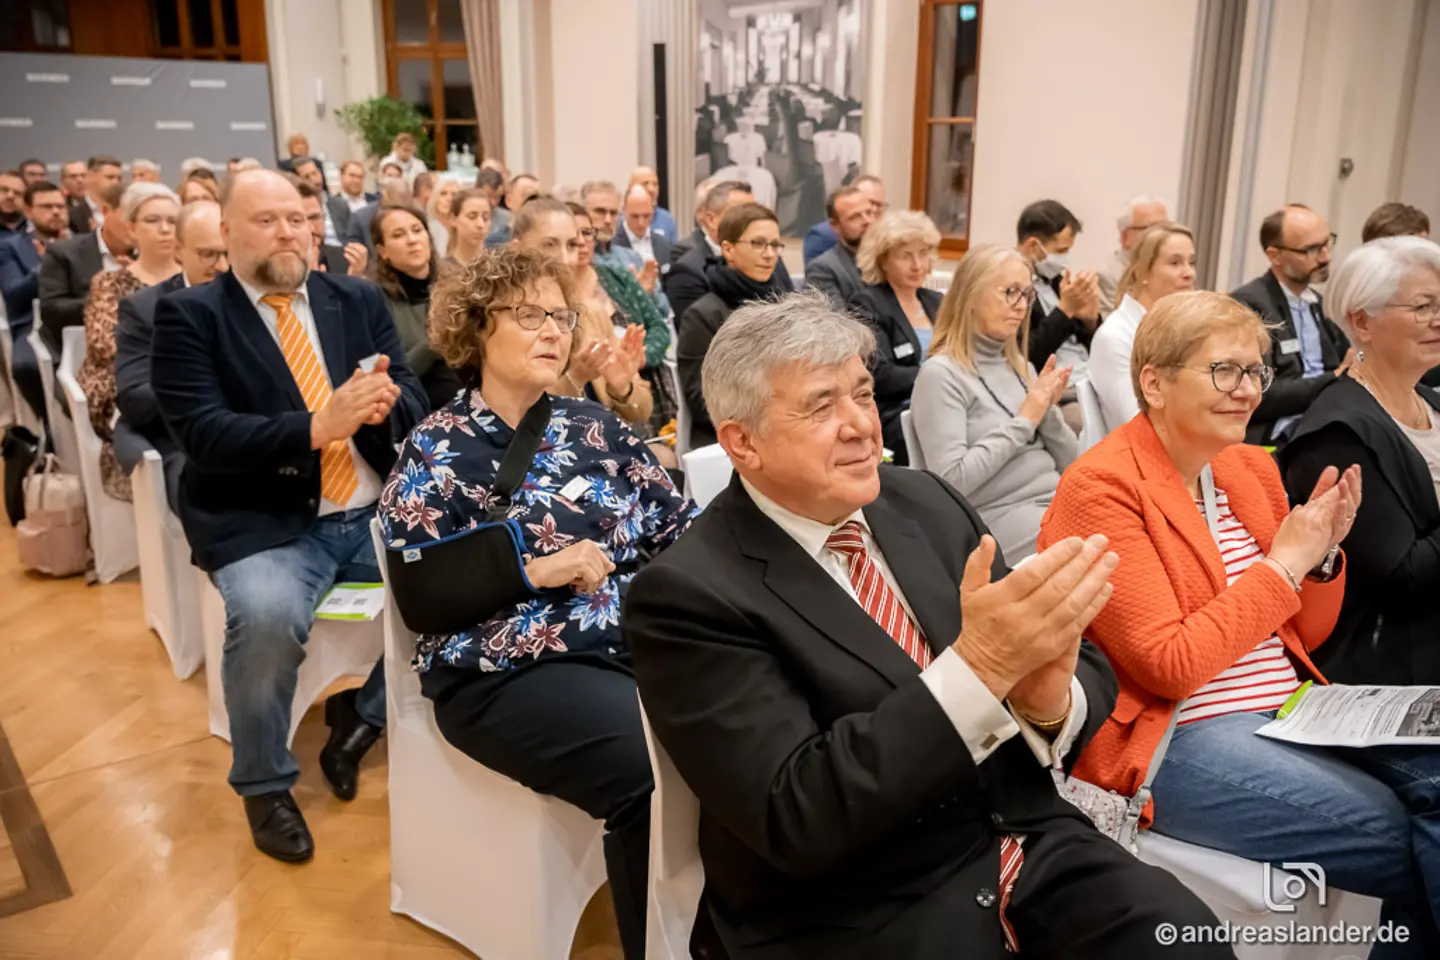 BARMER Fachsymposium 2022 - Sachsen-Anhalt